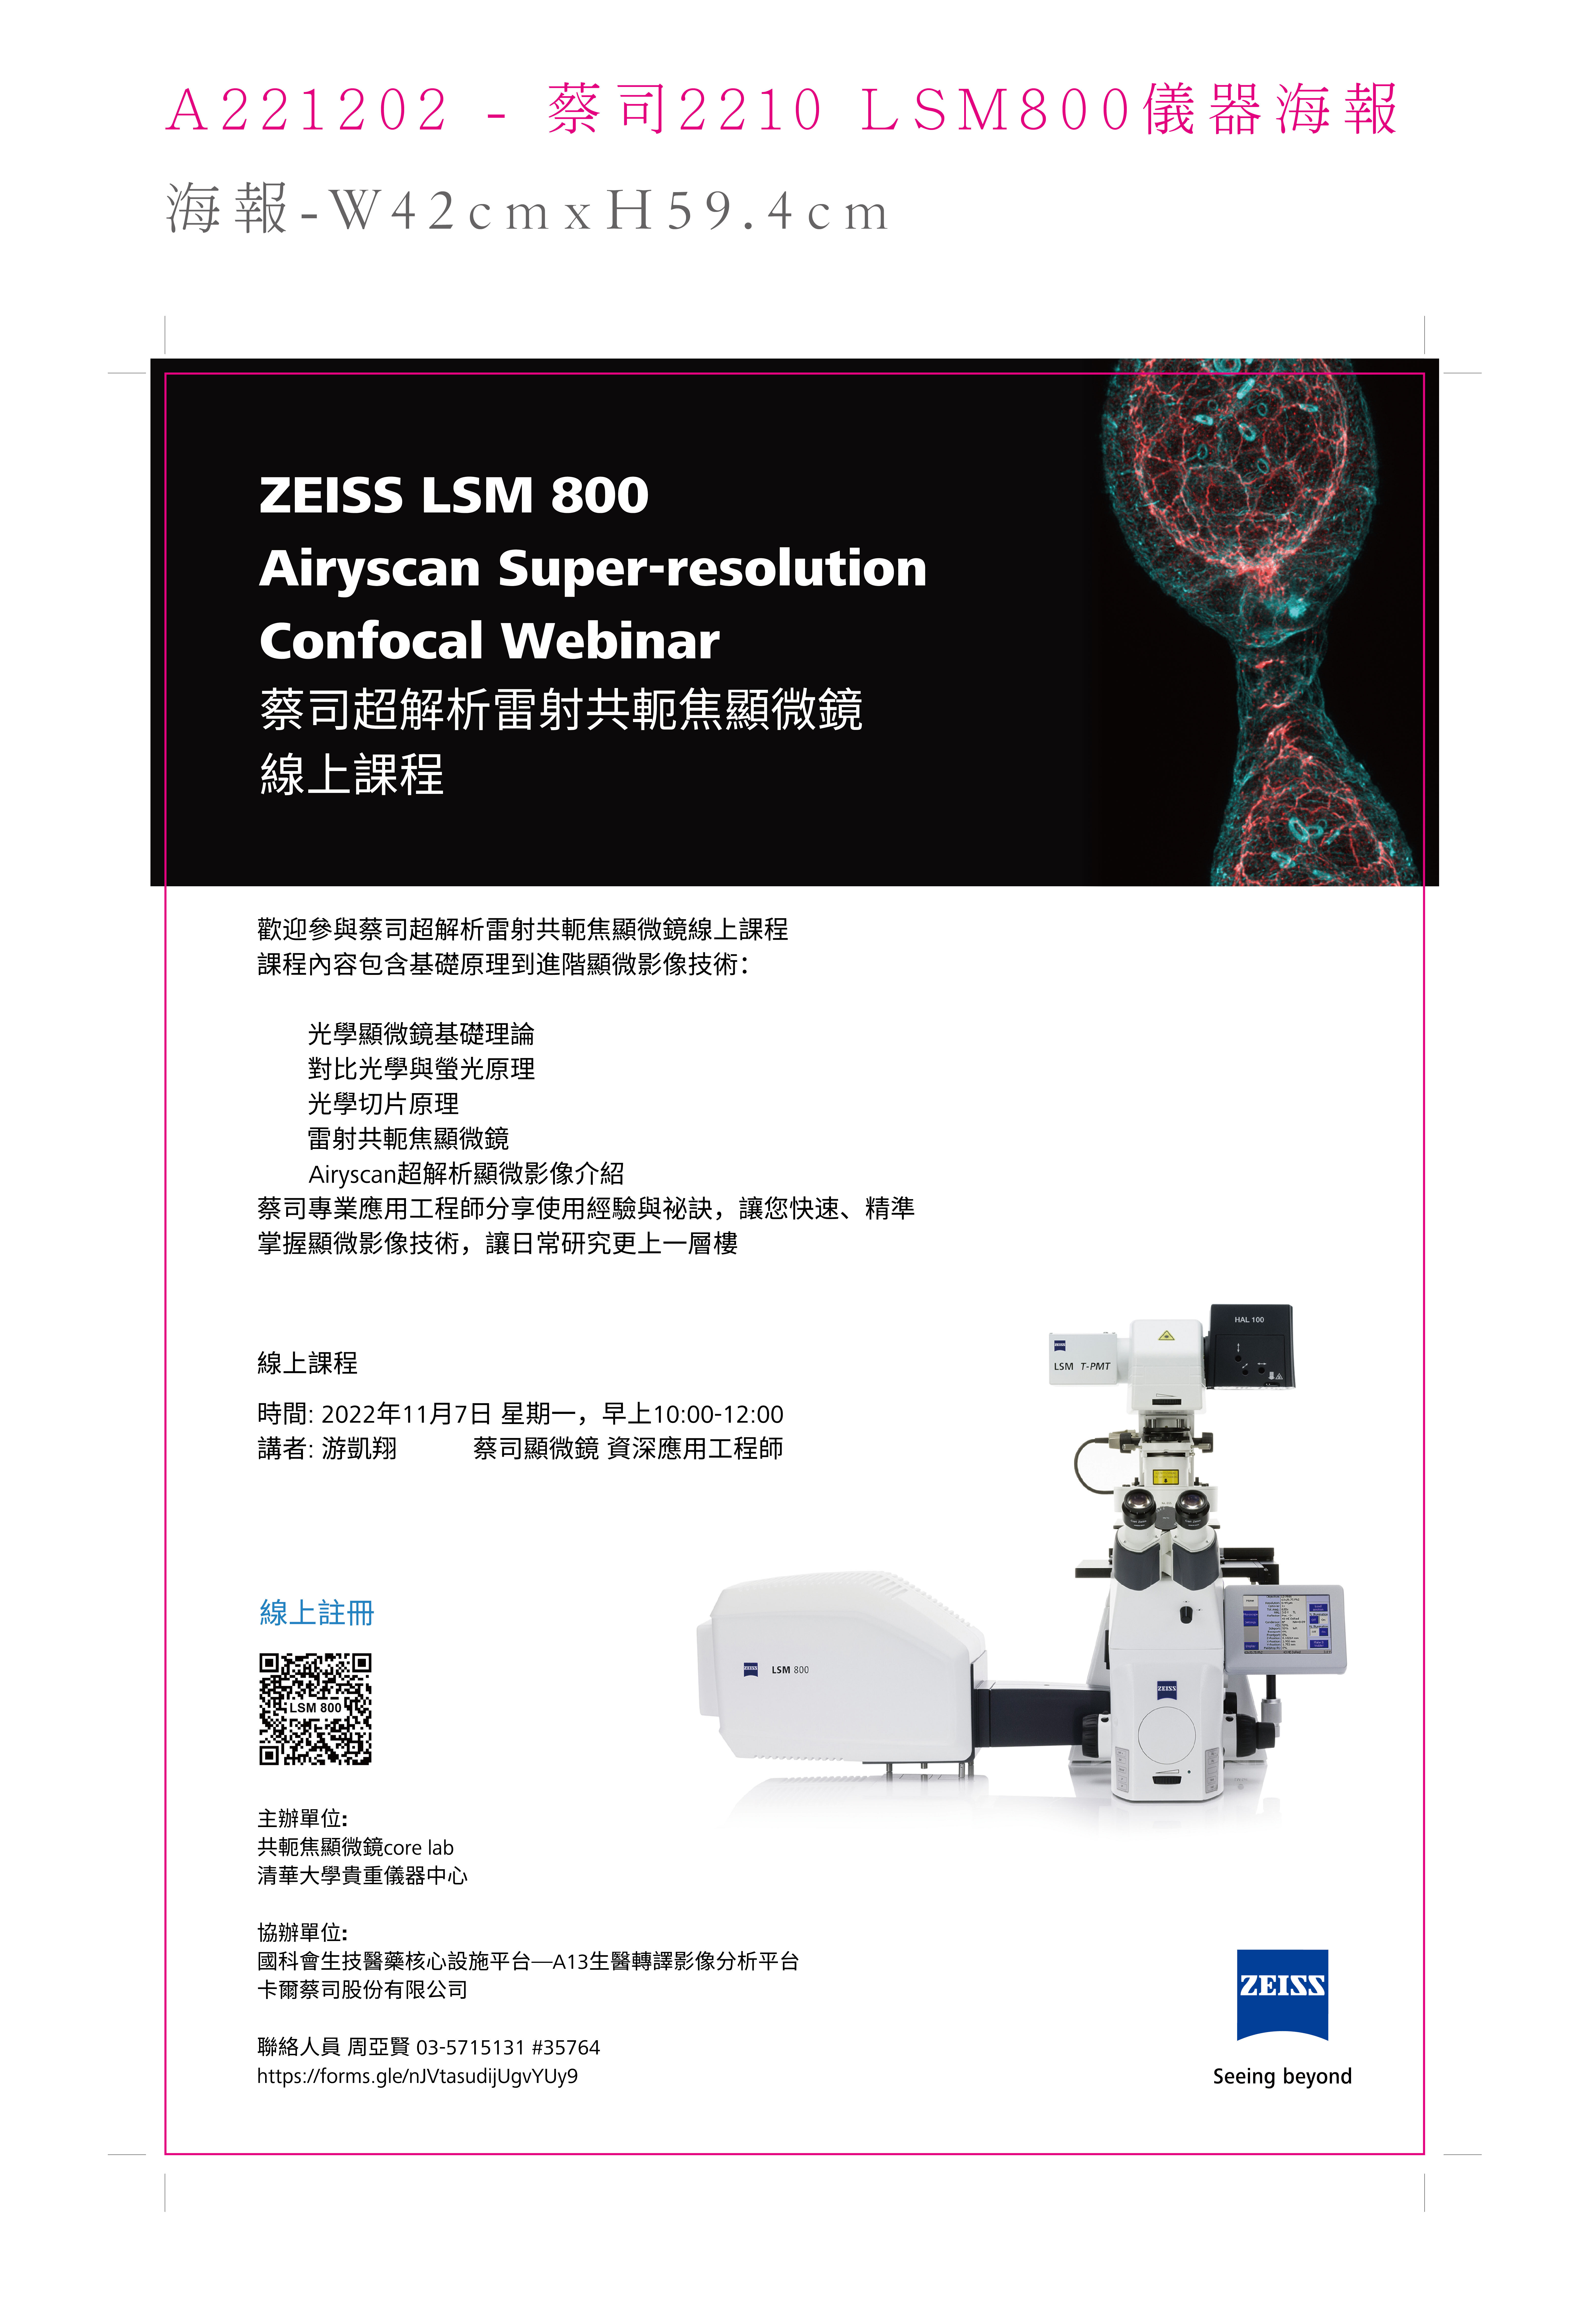 貴儀中心ZEISS LSM 800 Airyscan 超解析雷射共軛焦顯微鏡-線上課程  